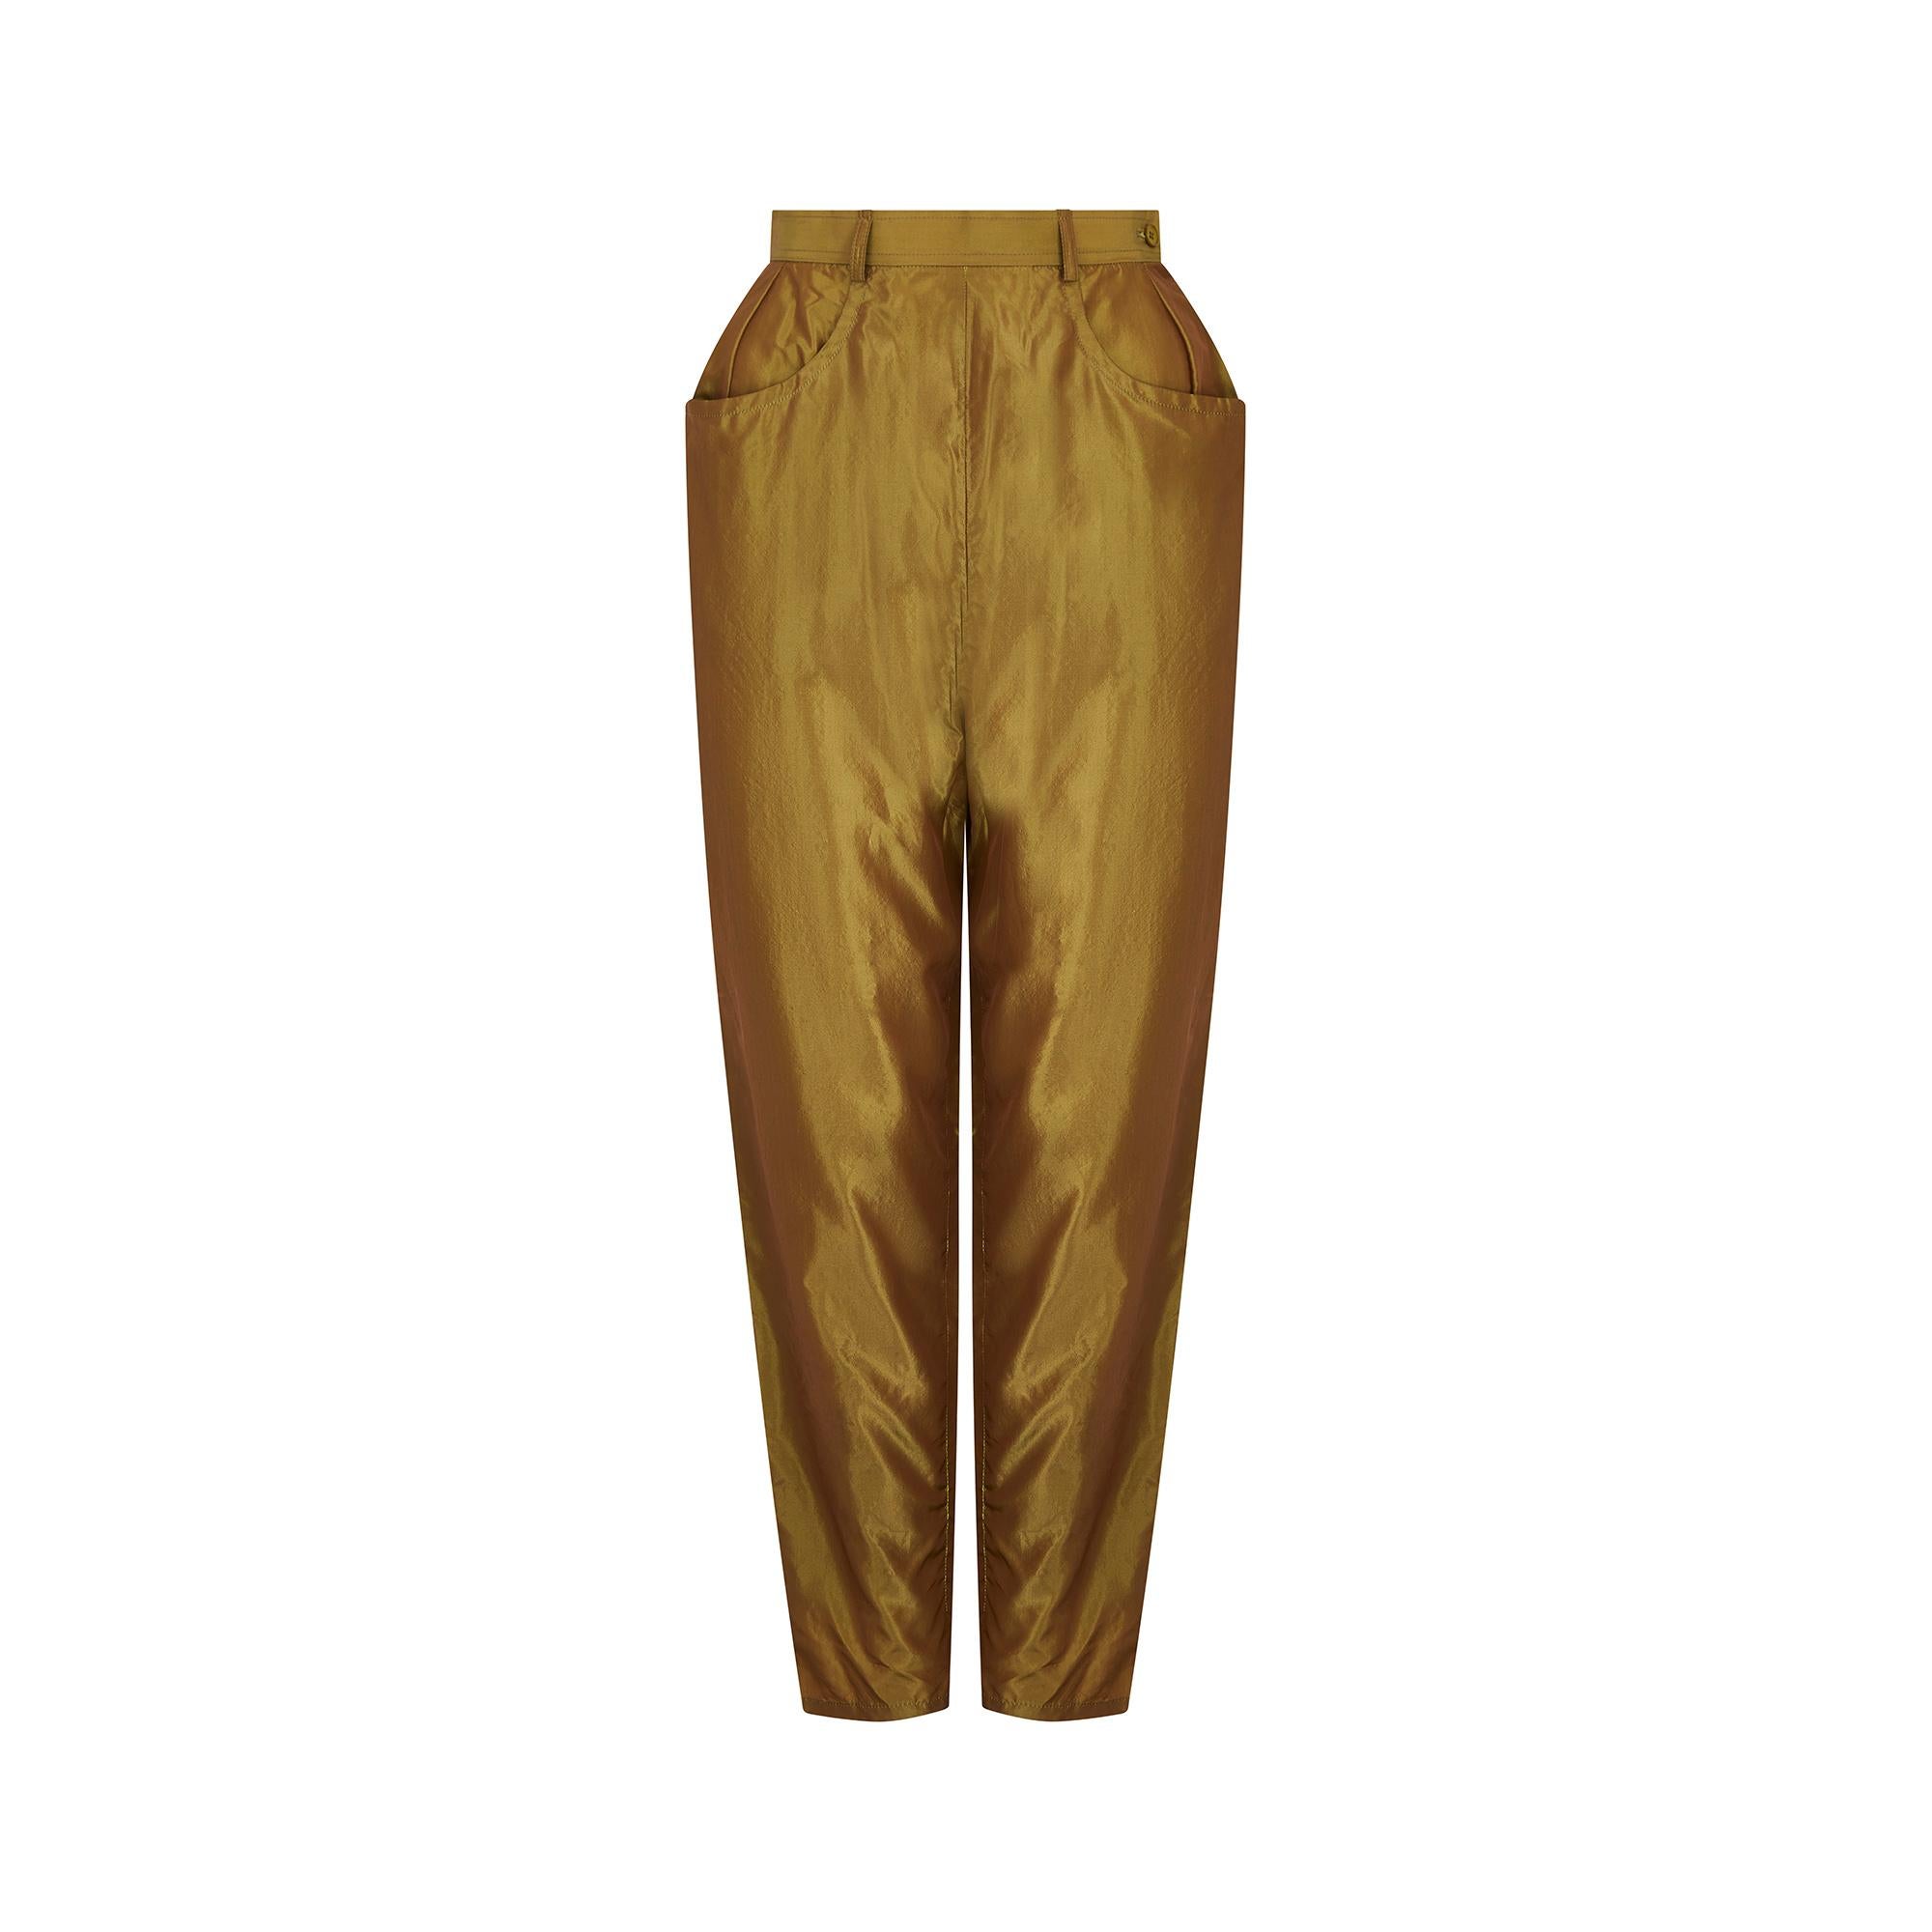 Schillernde Peg-Hose von Yves Saint Laurent aus der Linie Rive Gauche aus den 1990er Jahren mit hoher Taille und seitlichem Reißverschluss mit Knopfverschluss. Der Stoff ist eine weiche 100%ige Seide mit einem schillernden Glanz, der zwischen